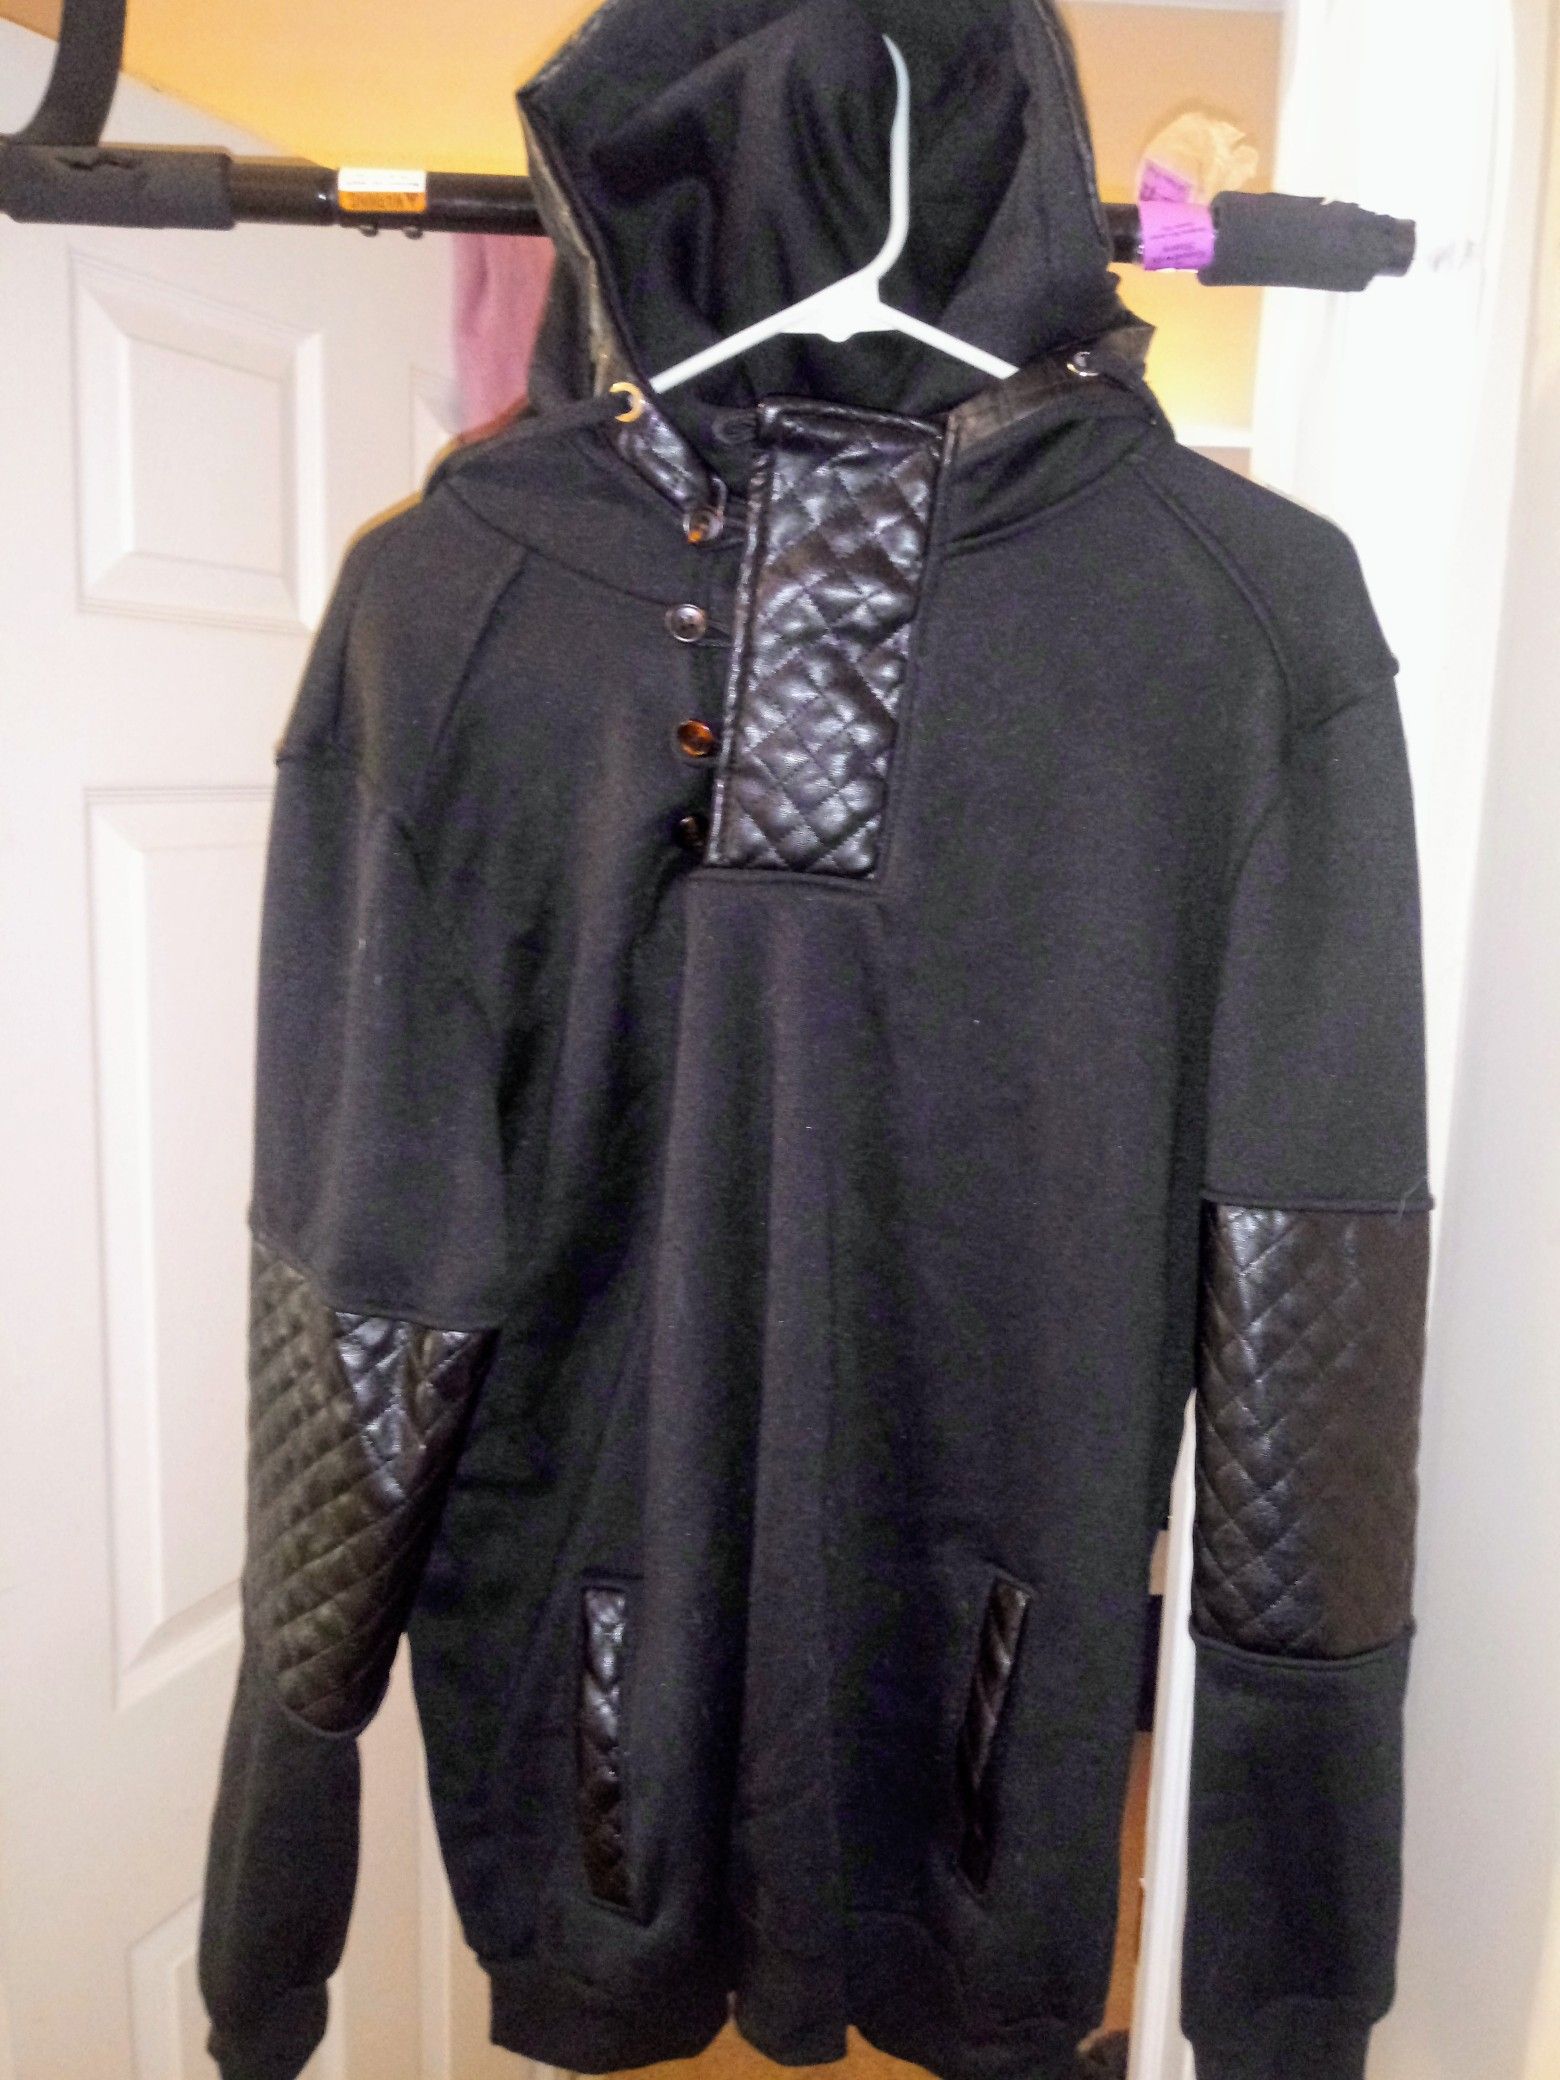 Leather jacket pullover hoodie XL slim